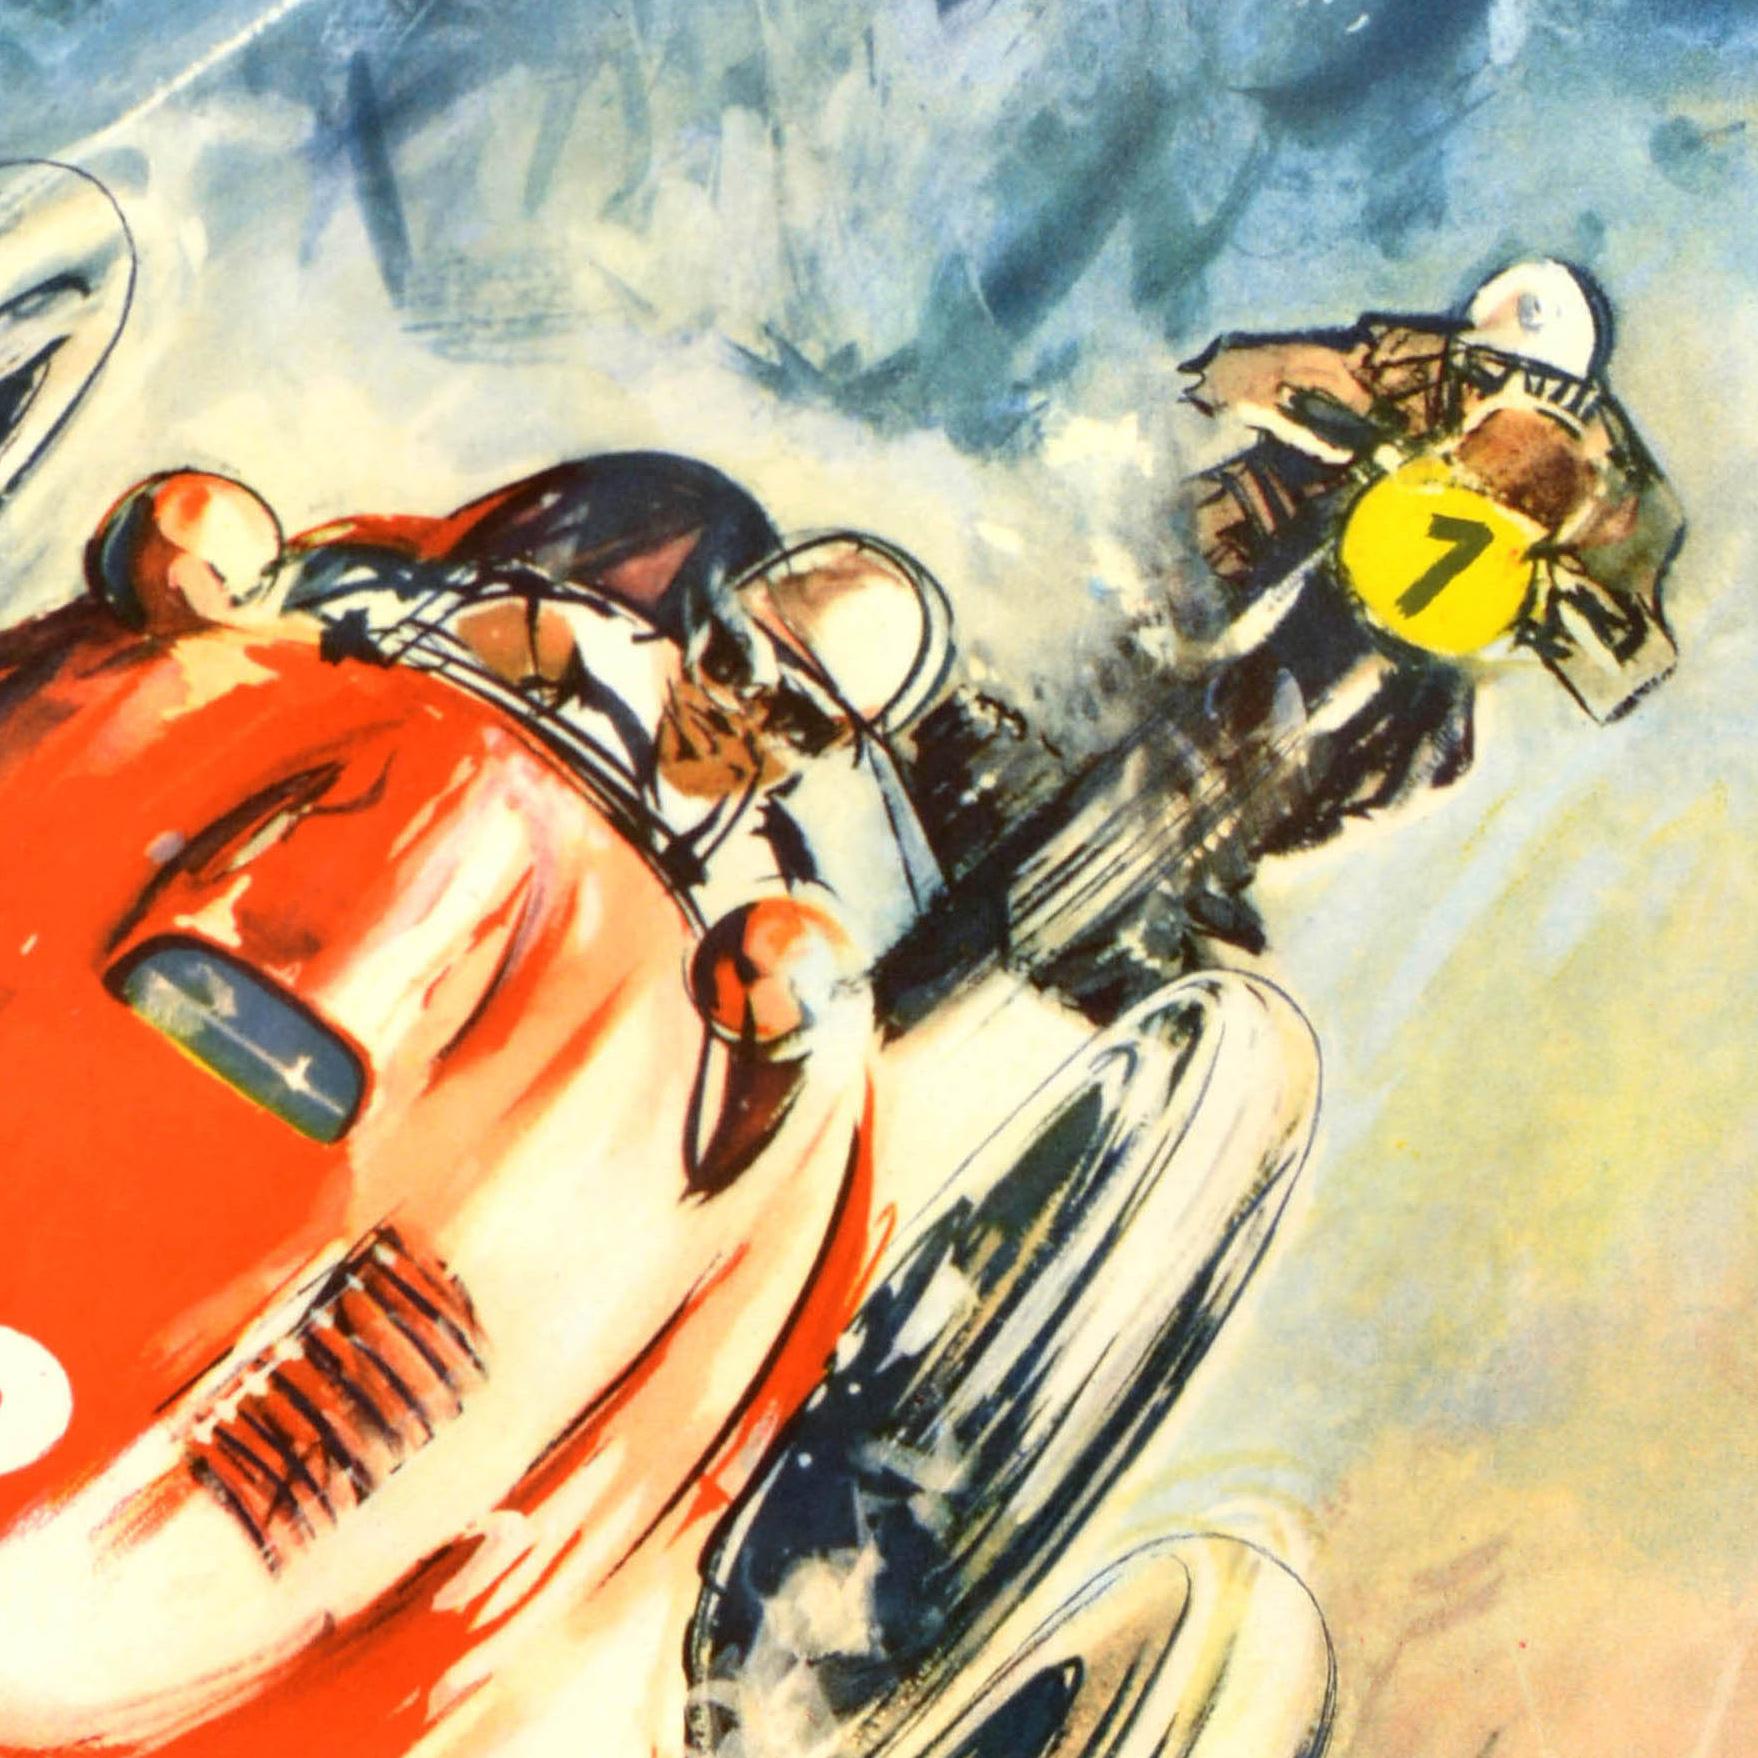 Original-Vintage- Motorsport-Poster XIX, Internationales ADAC Eifel-Rennen Nurburgring – Print von Unknown